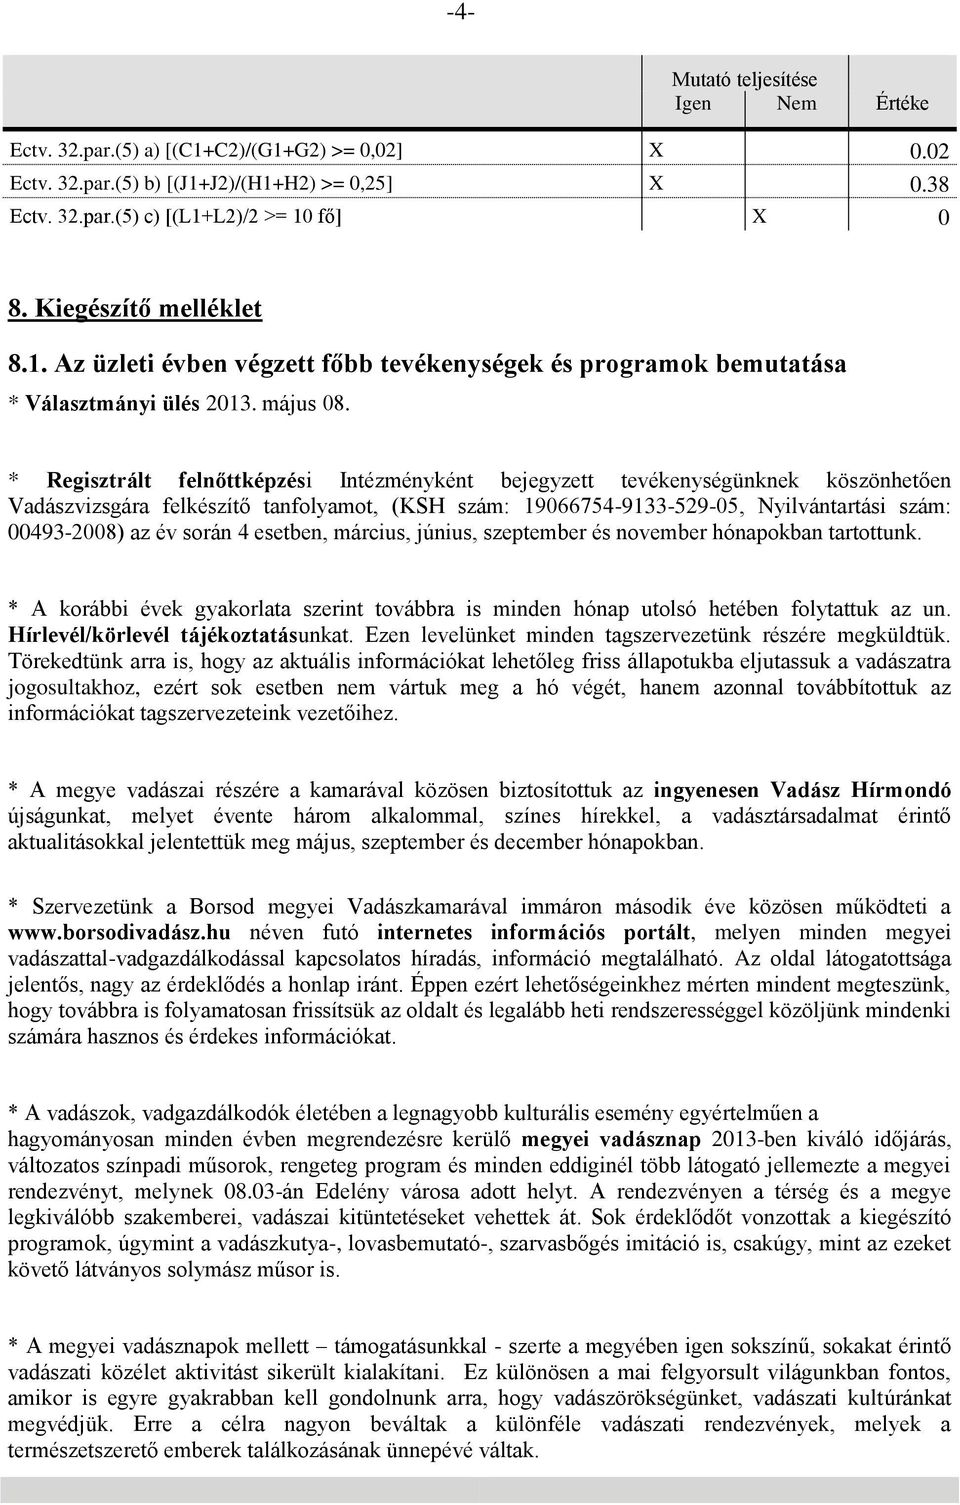 * Regisztrált felnőttképzési Intézményként bejegyzett tevékenységünknek köszönhetően Vadászvizsgára felkészítő tanfolyamot, (KSH szám: 19066754-9133-529-05, Nyilvántartási szám: 00493-2008) az év